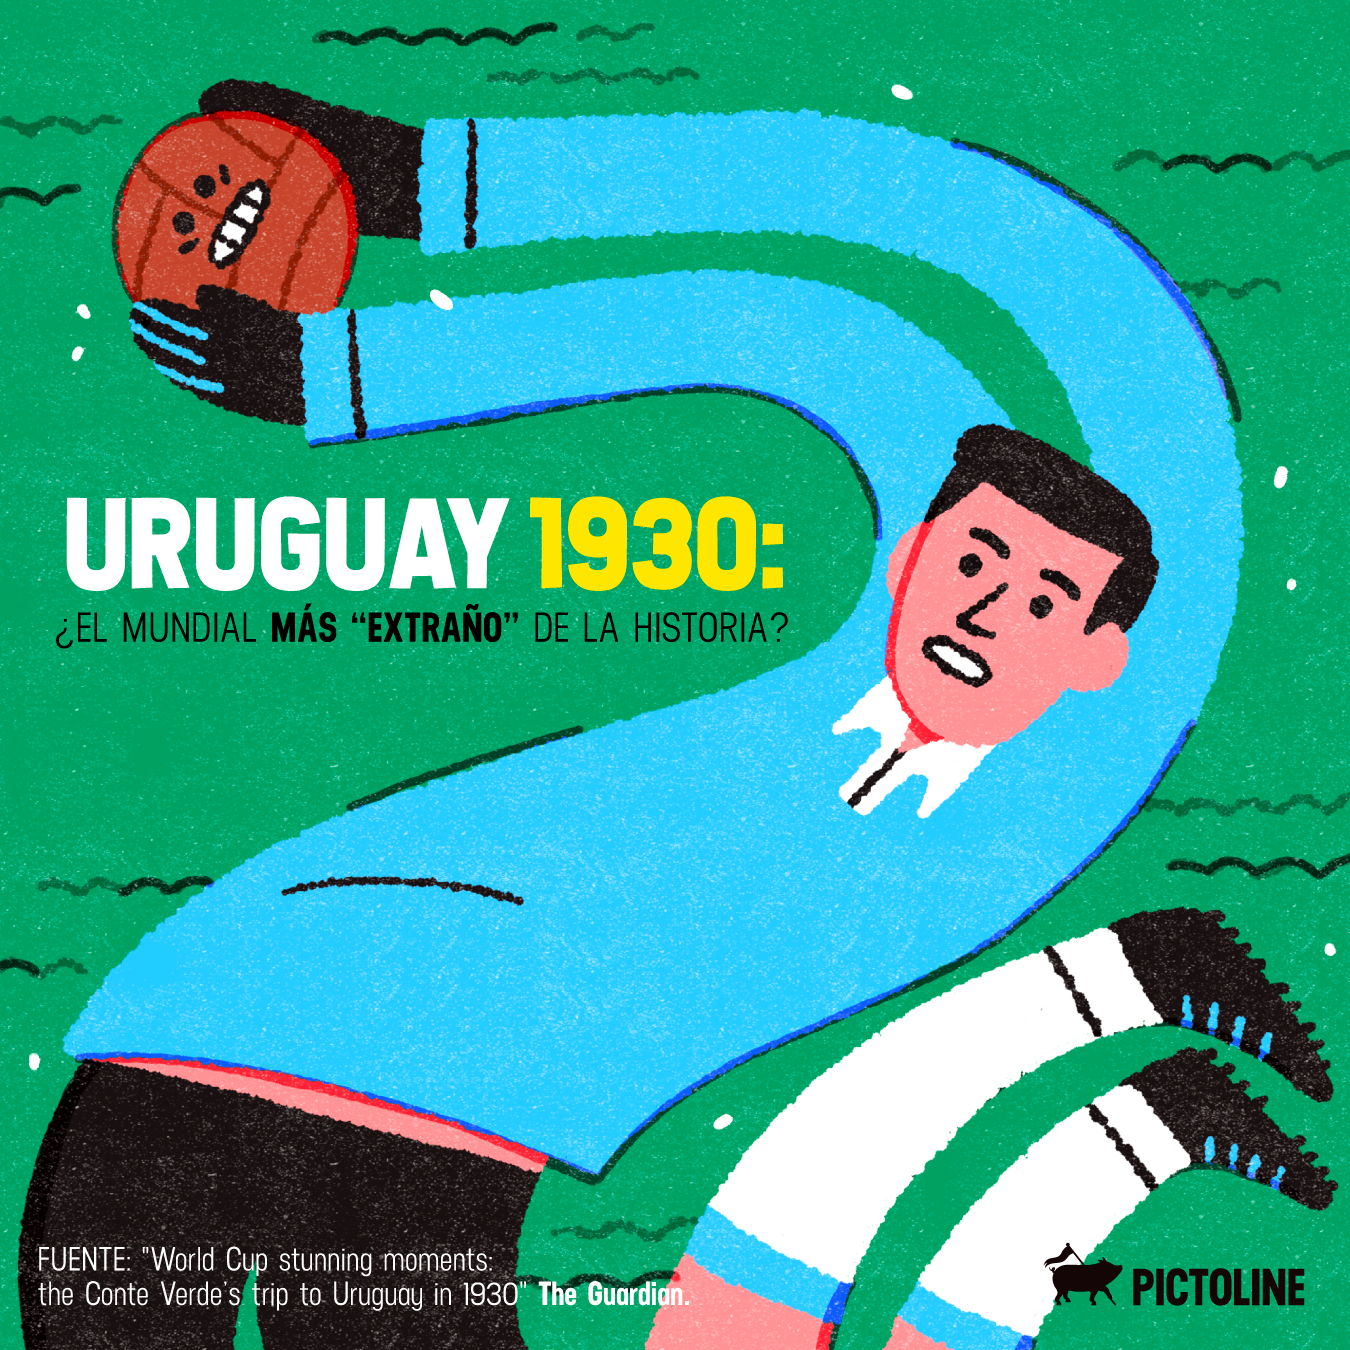 Cabezazos 💥 espontáneos en la cancha 🏃 goles con la mano 👀Los Mundiales están llenos de cosas raras, pero el de Uruguay 1930 🇺🇾 es considerado el más “extraño” de la historia: